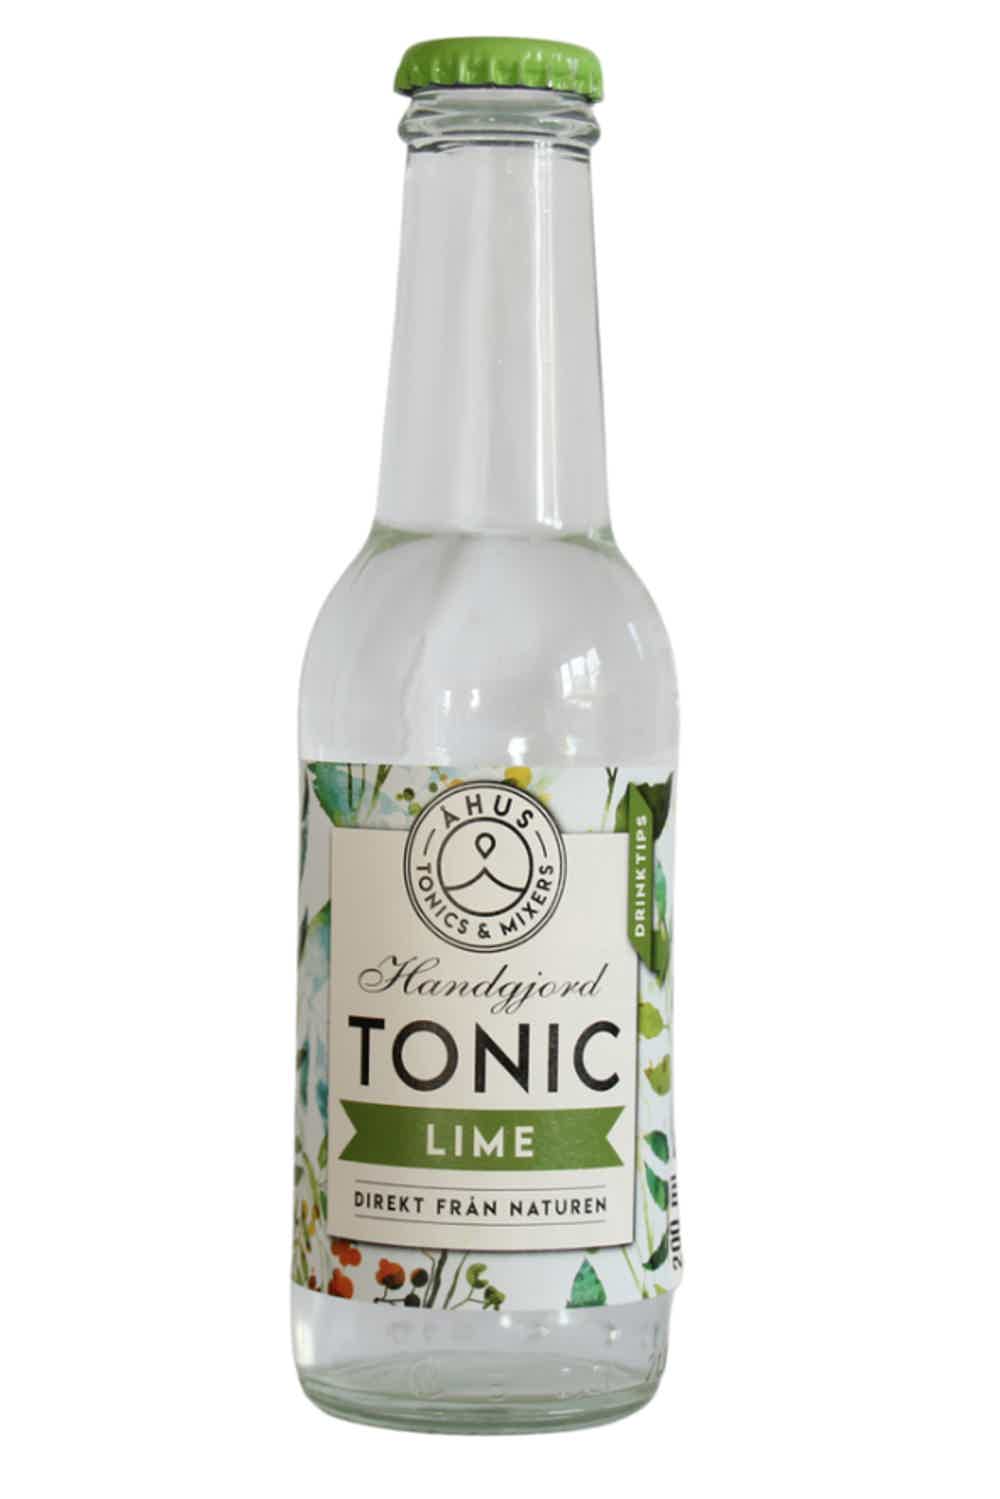 Åhus Tonic Lime 0.0% 0.2L, Non alcohol